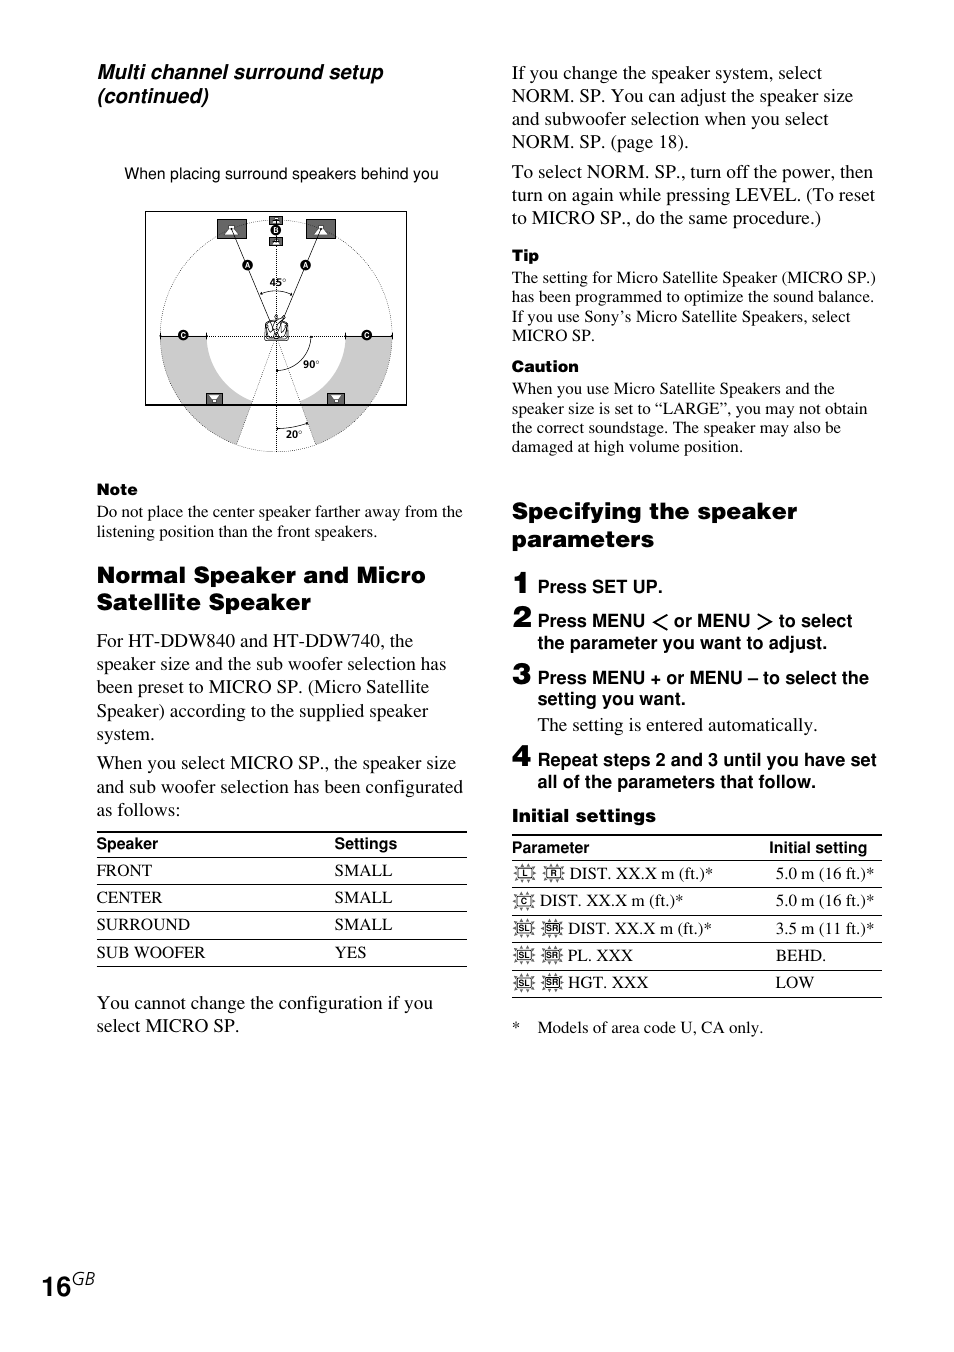 Normal speaker and micro satellite speaker, Specifying the speaker